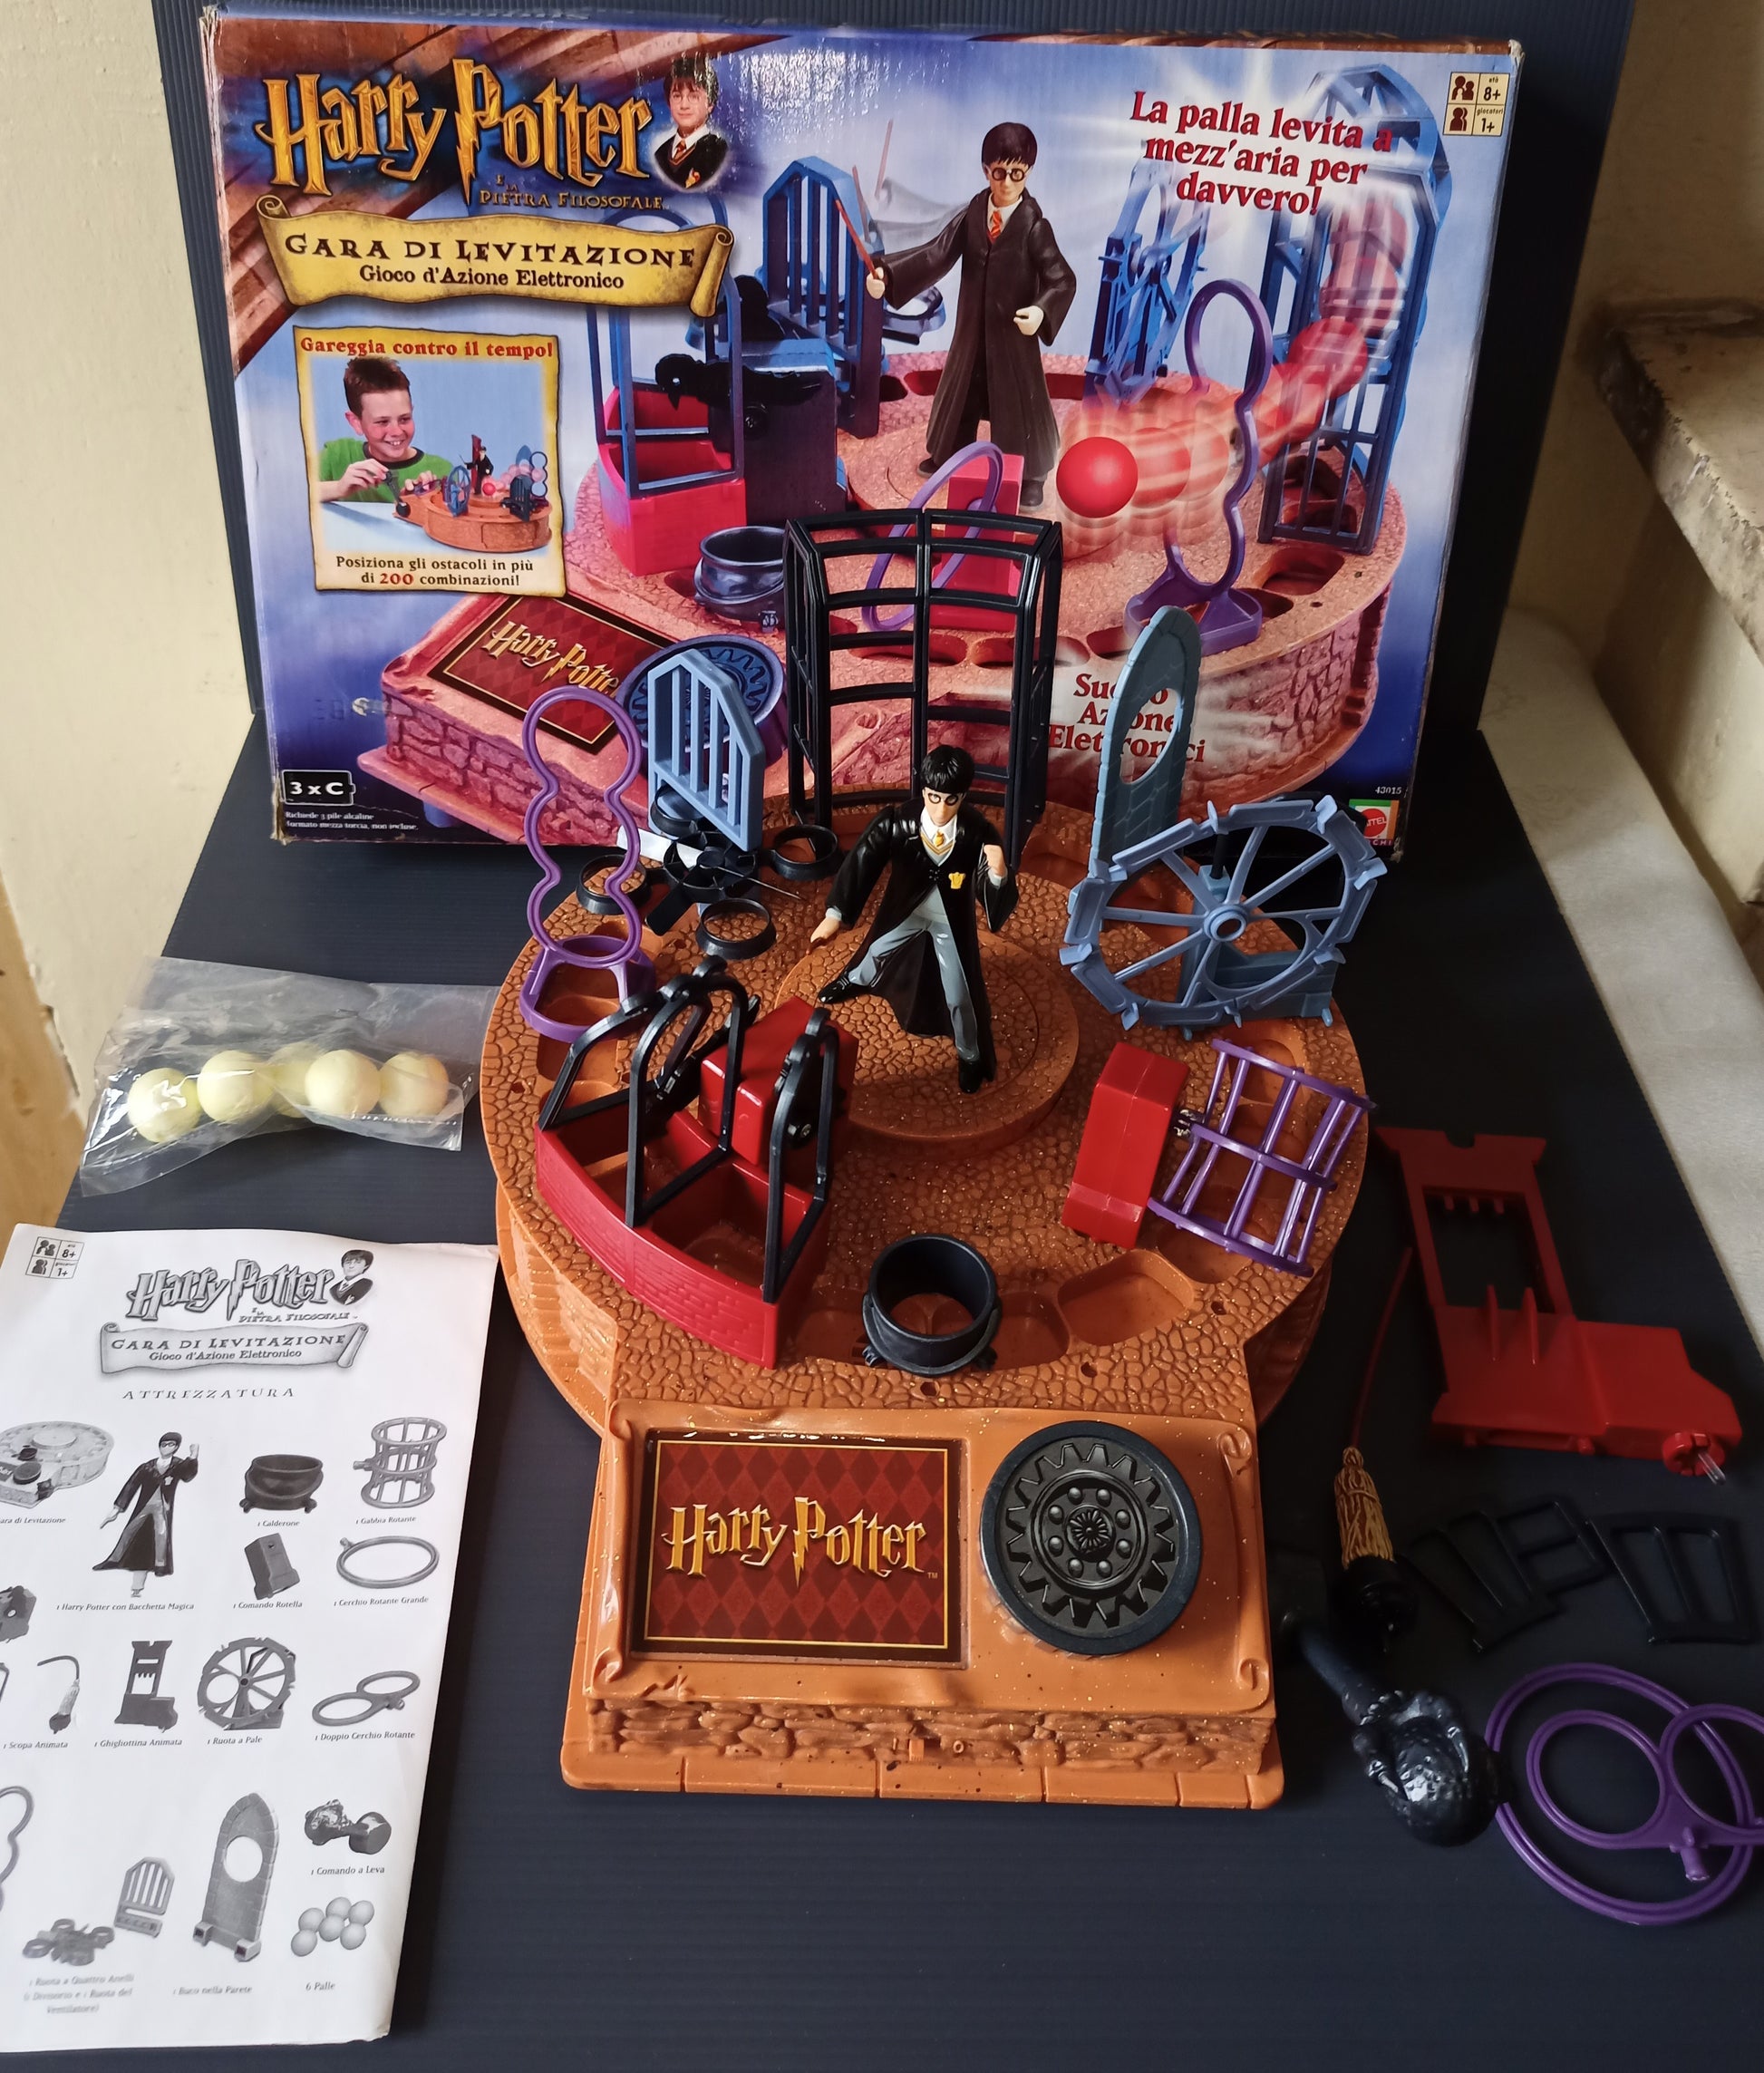 Gioco Gara Di Levitazione Harry Potter della Mattel – LUDOteca e dintorni